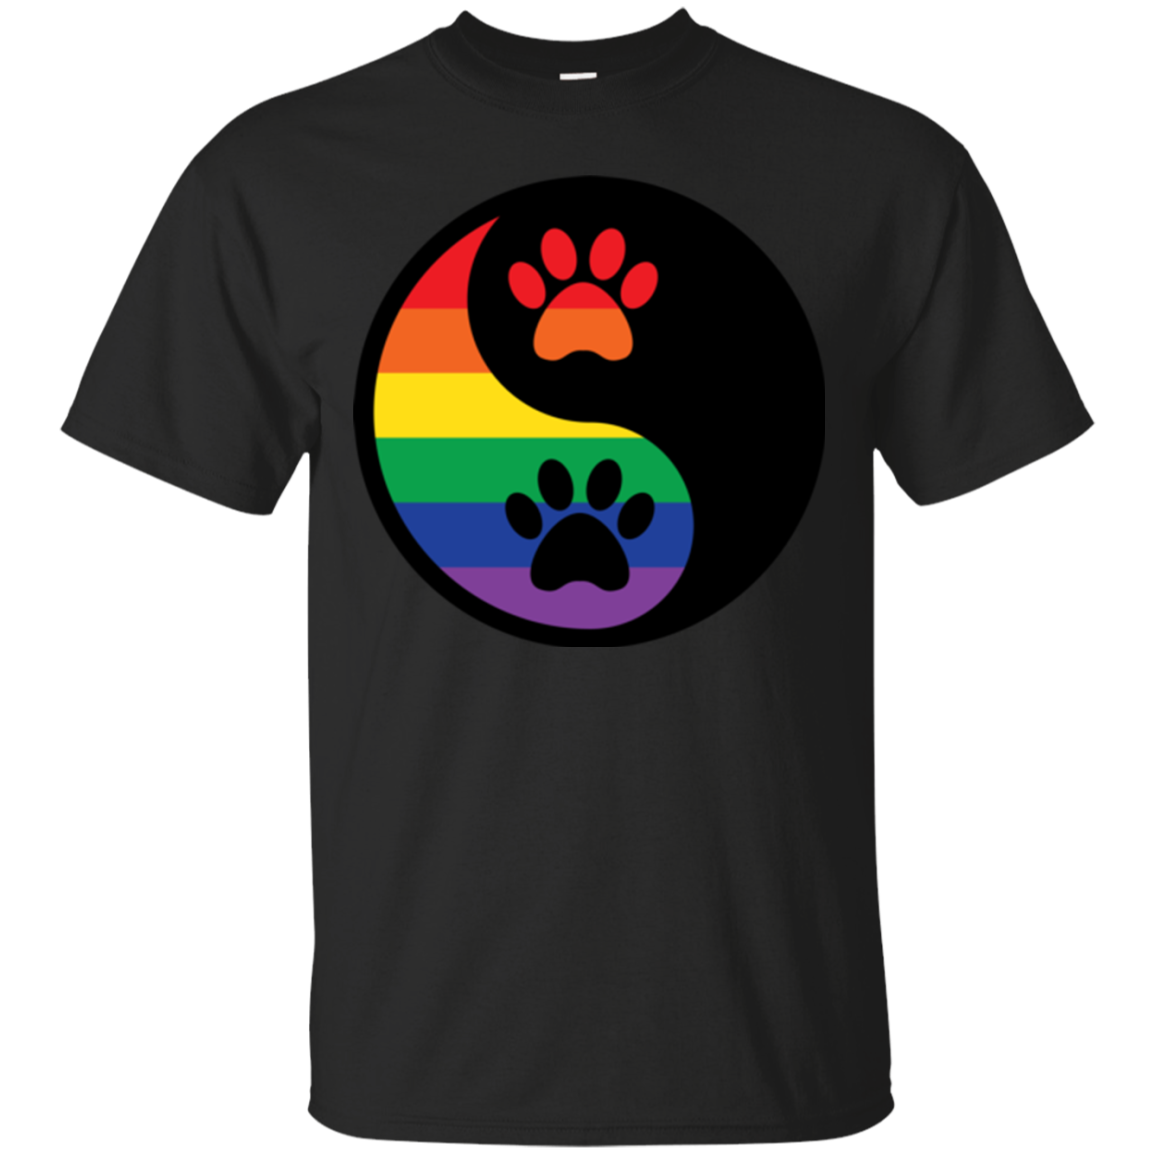 Rainbow Paw Yin Yang Pet black Shirt For Men gay Pride Black Tshirt